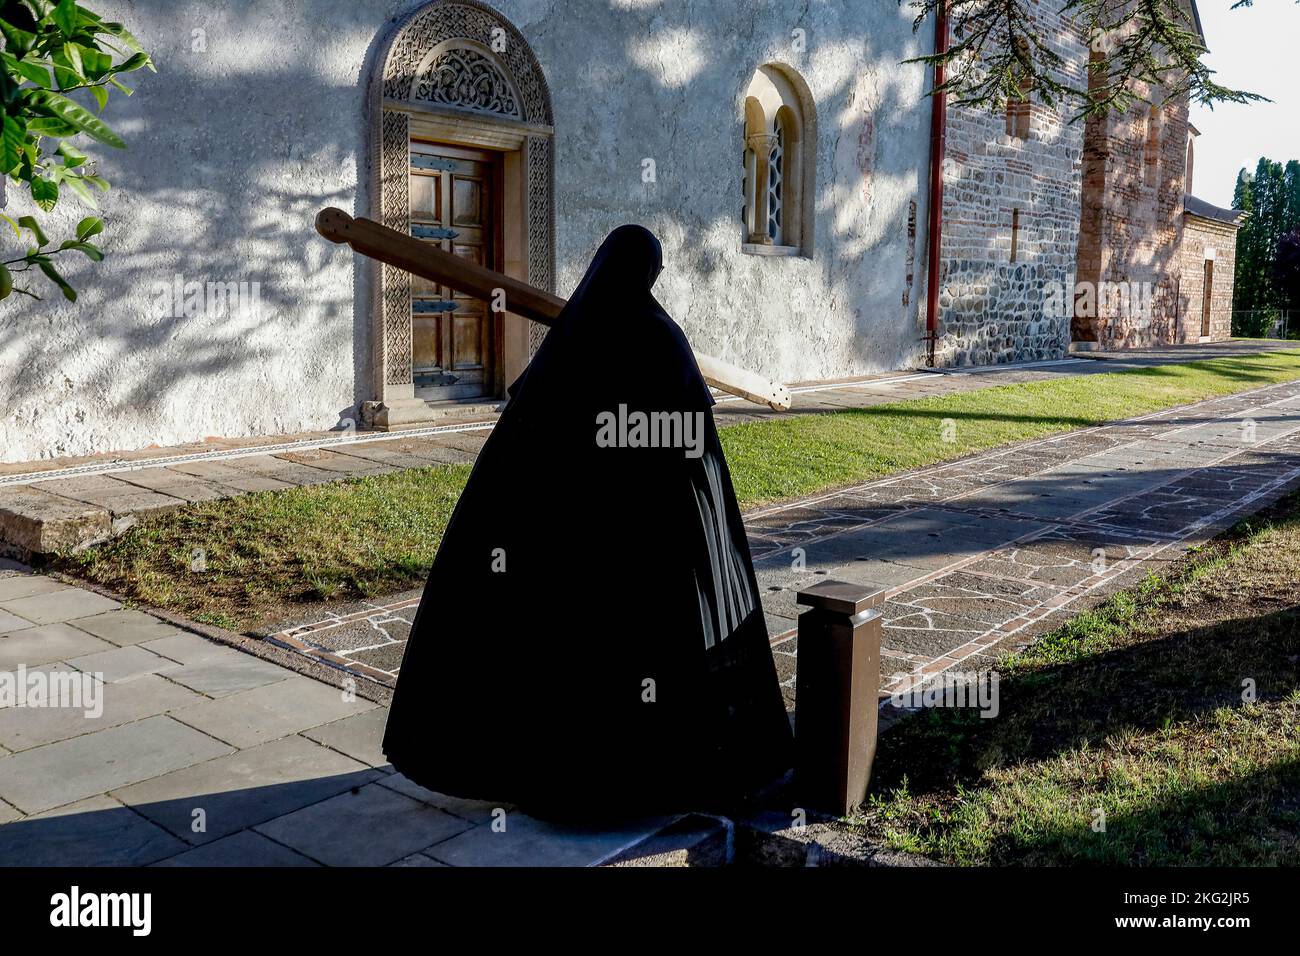 Orthodoxes Kloster Zica in der Nähe von Kraljevo, Serbien. Nonne ruft zu einer Morgenfeier, während sie durch die Kirche geht Stockfoto